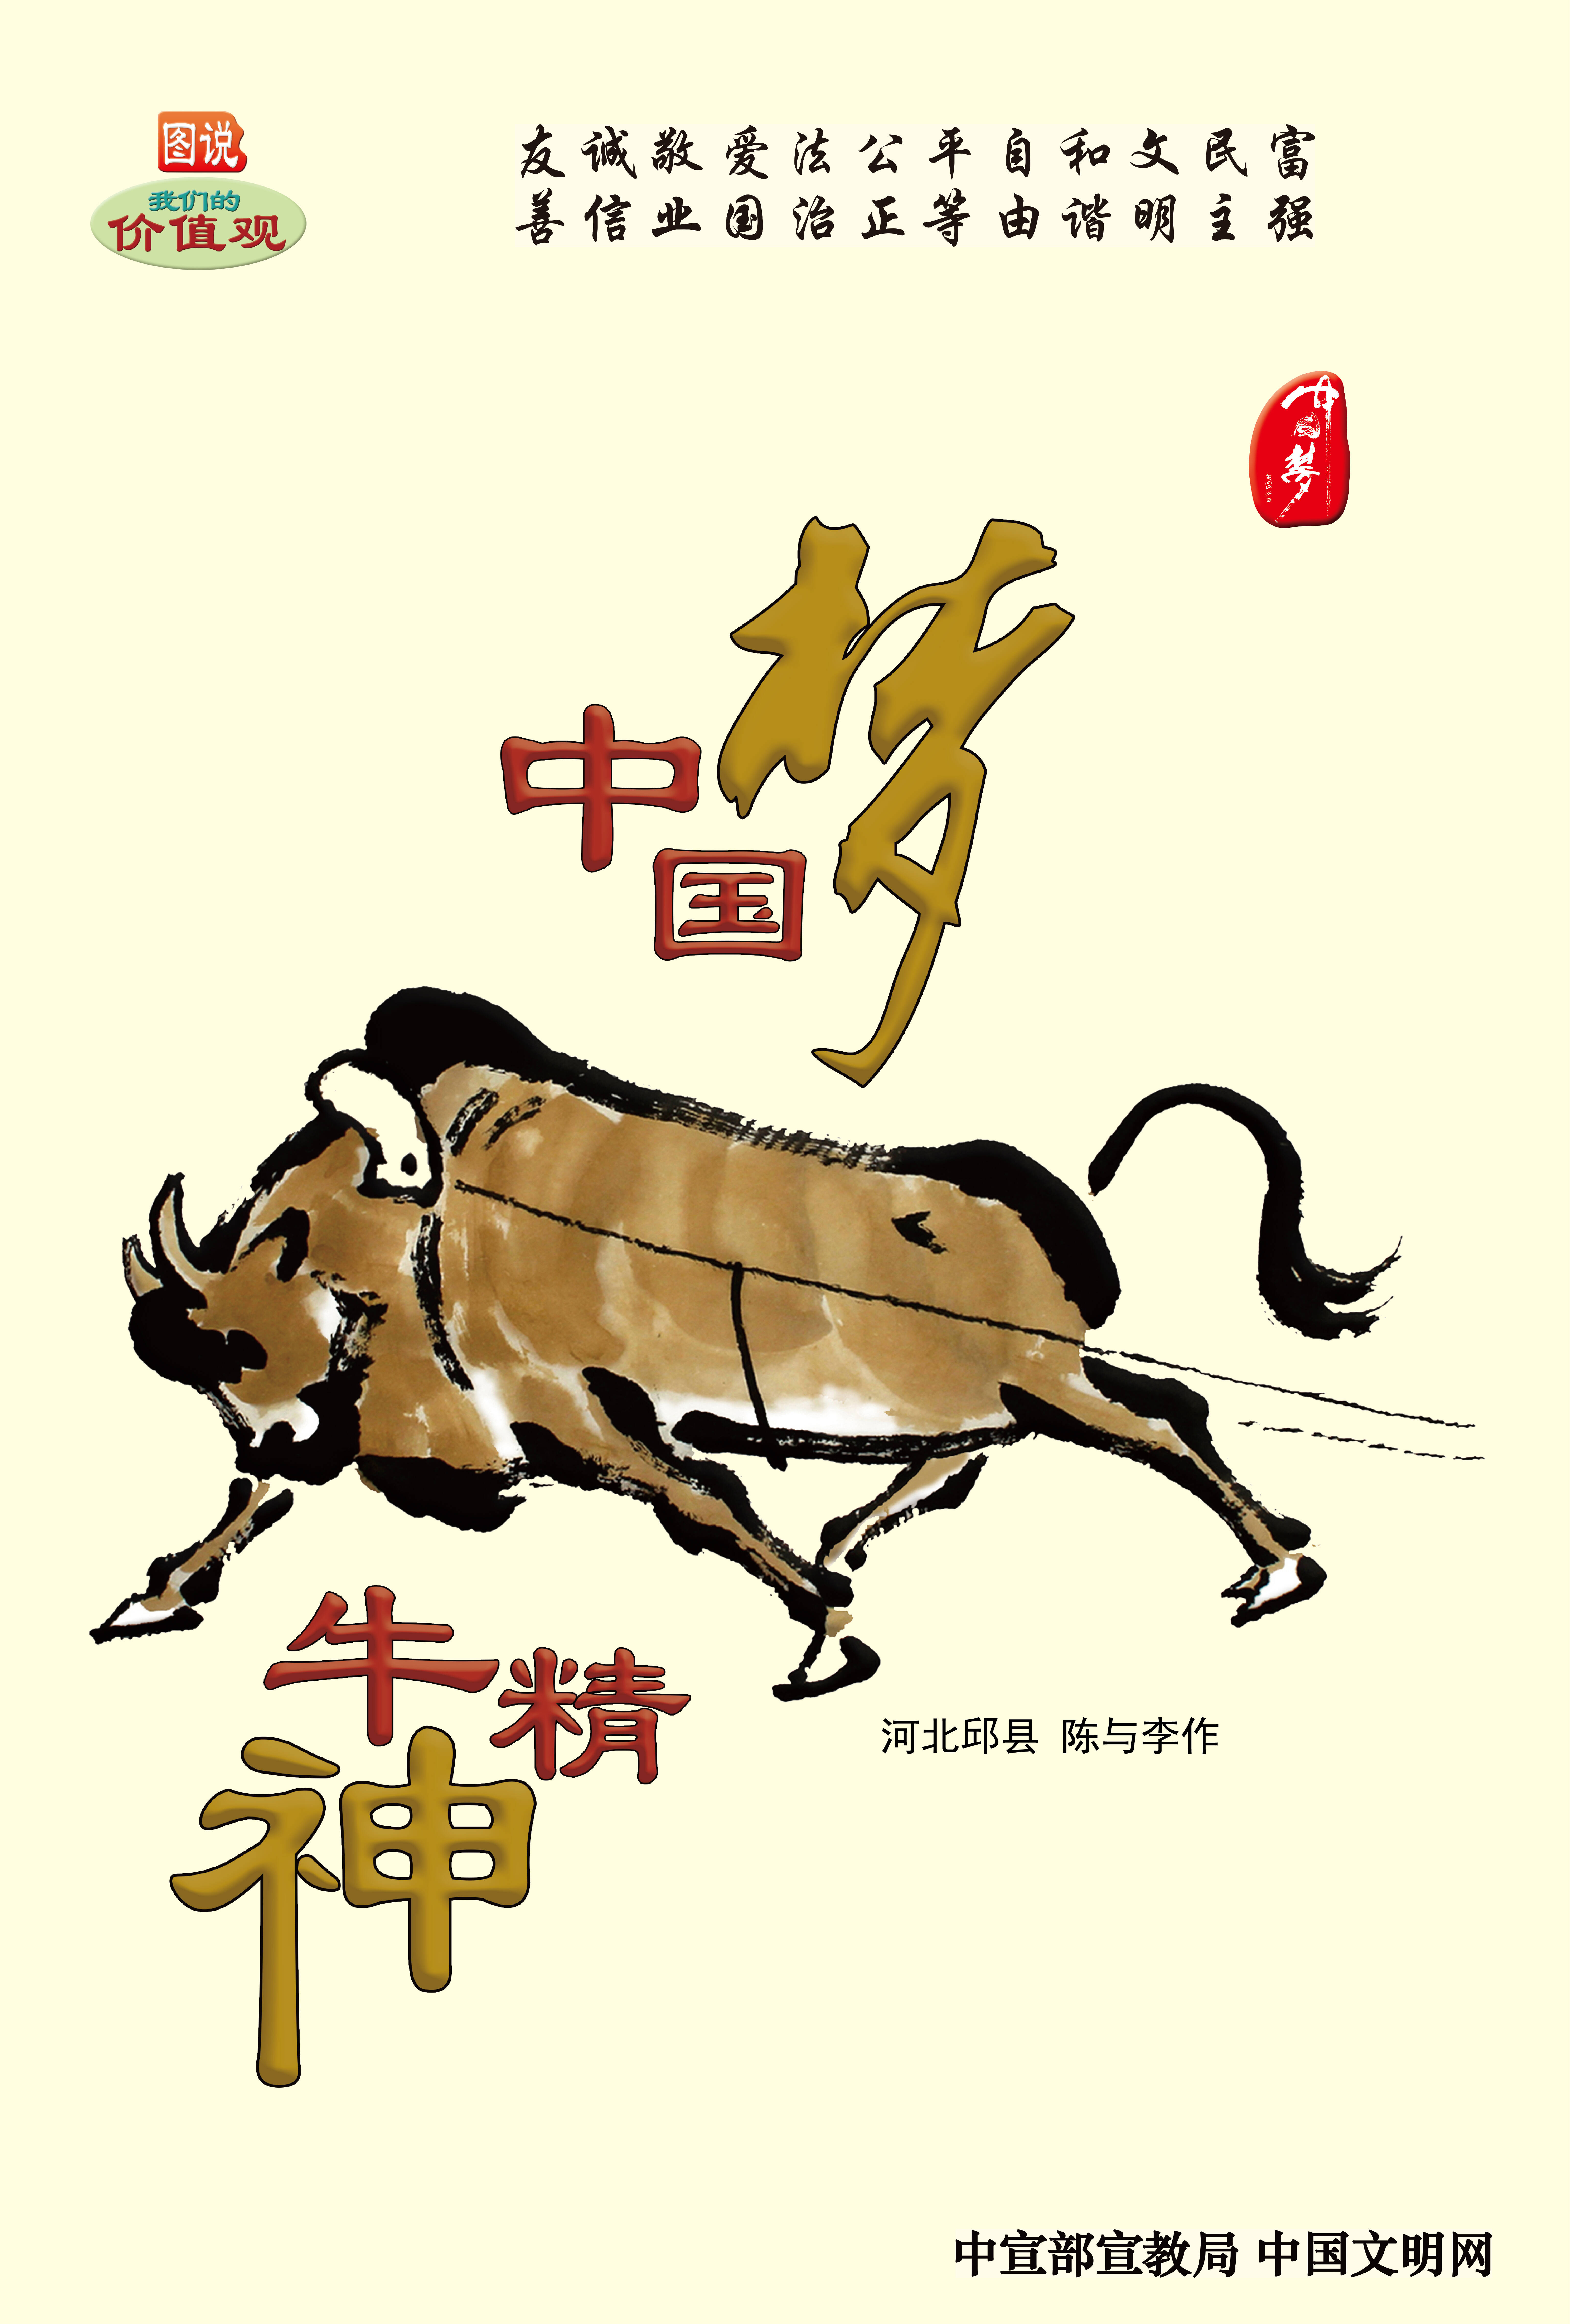 公益广告丨中国梦 牛精神(图1)